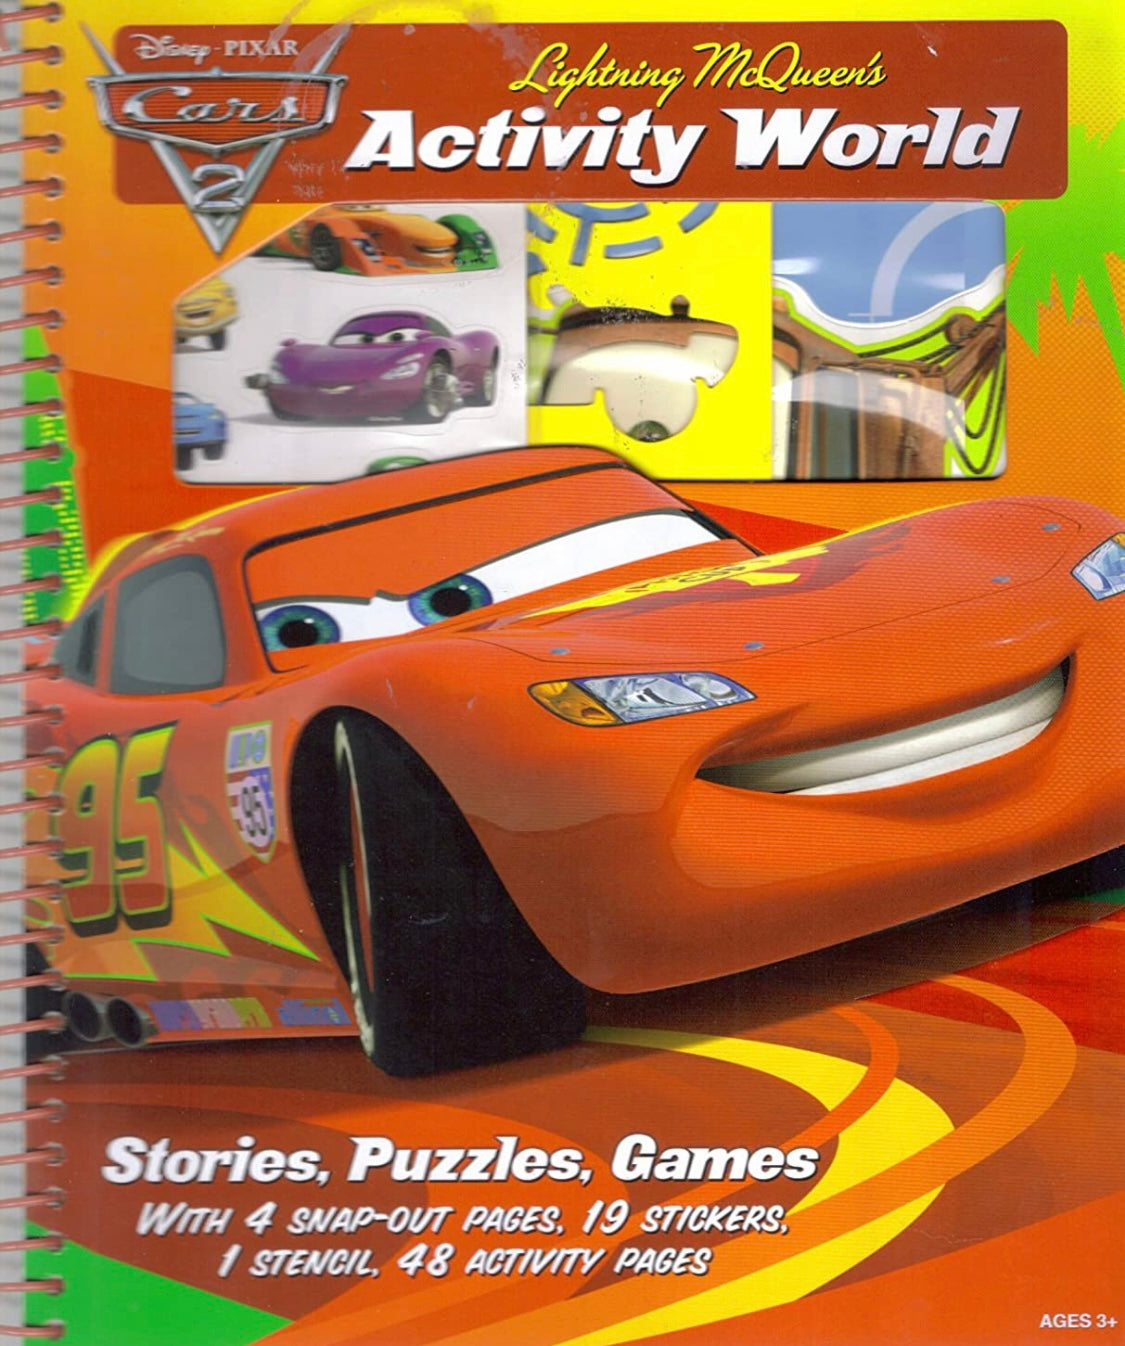 Disney Pixar Cars 2 Lighting McQueen’s Activity World